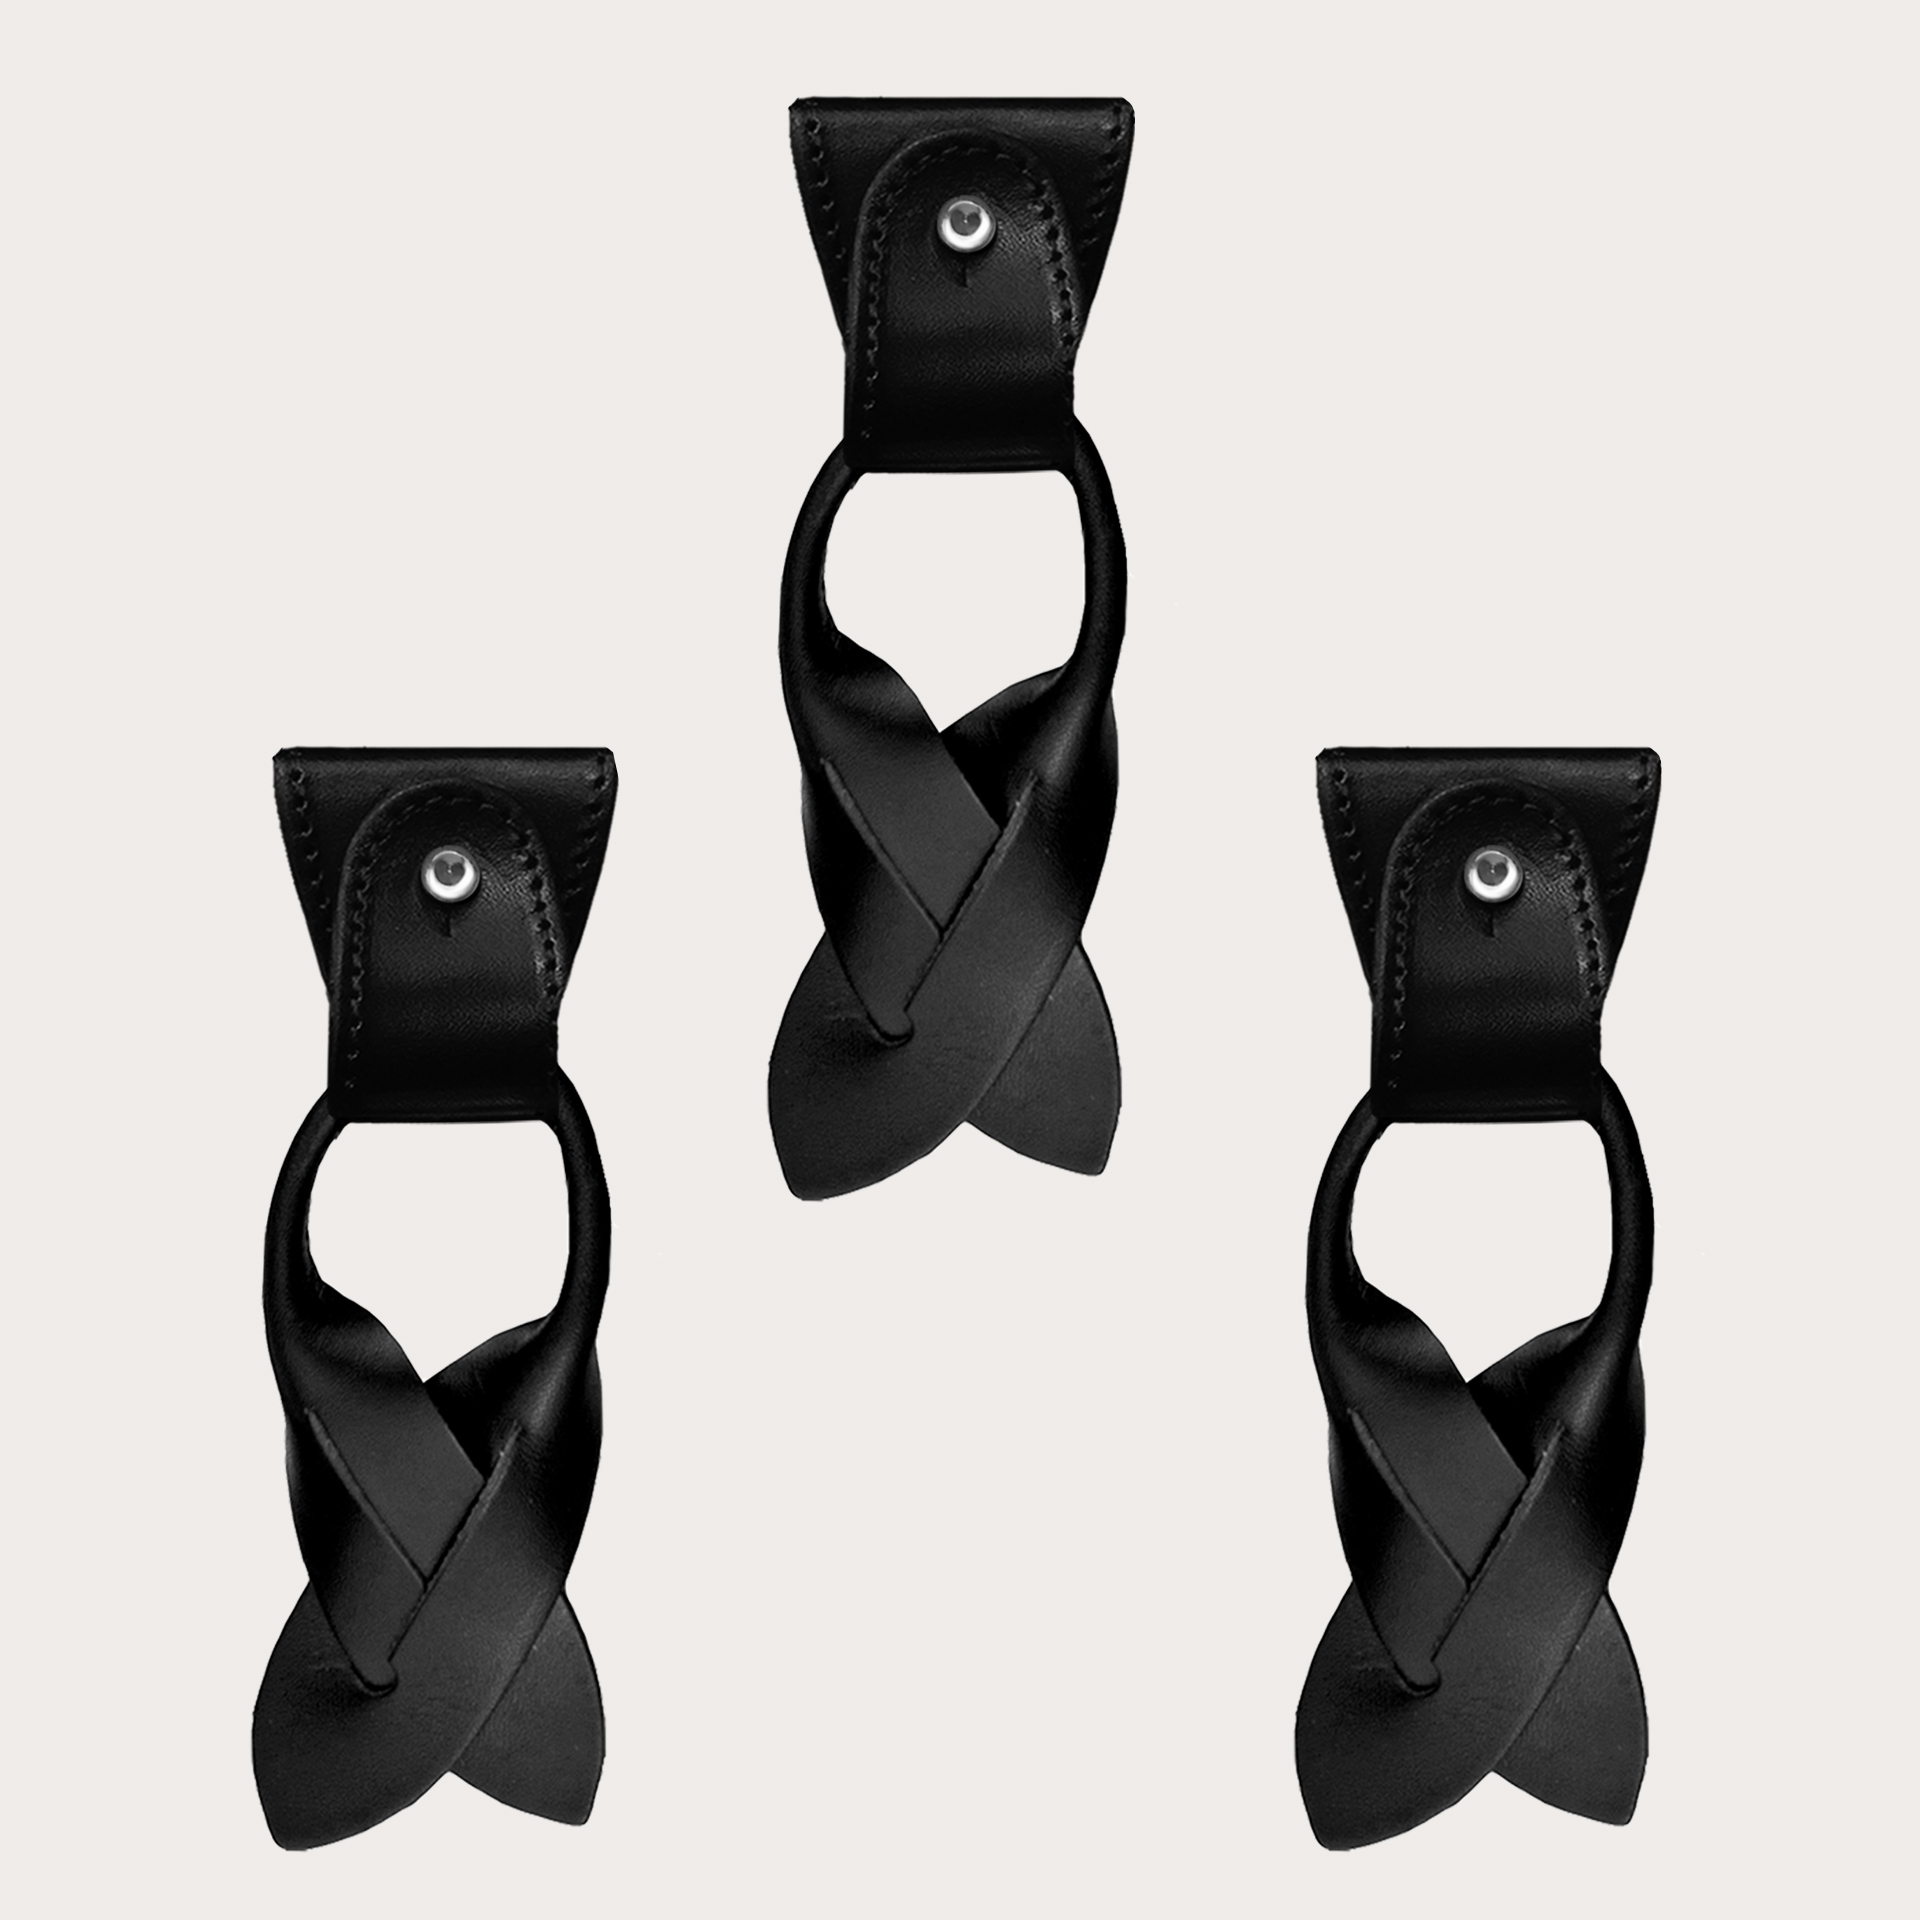 Konvertierbare Enden + terminals für Knöpfe schwarz aus Leder für Hosenträger Y-Form Hosenträger mit Clips oder zum Knöpfen